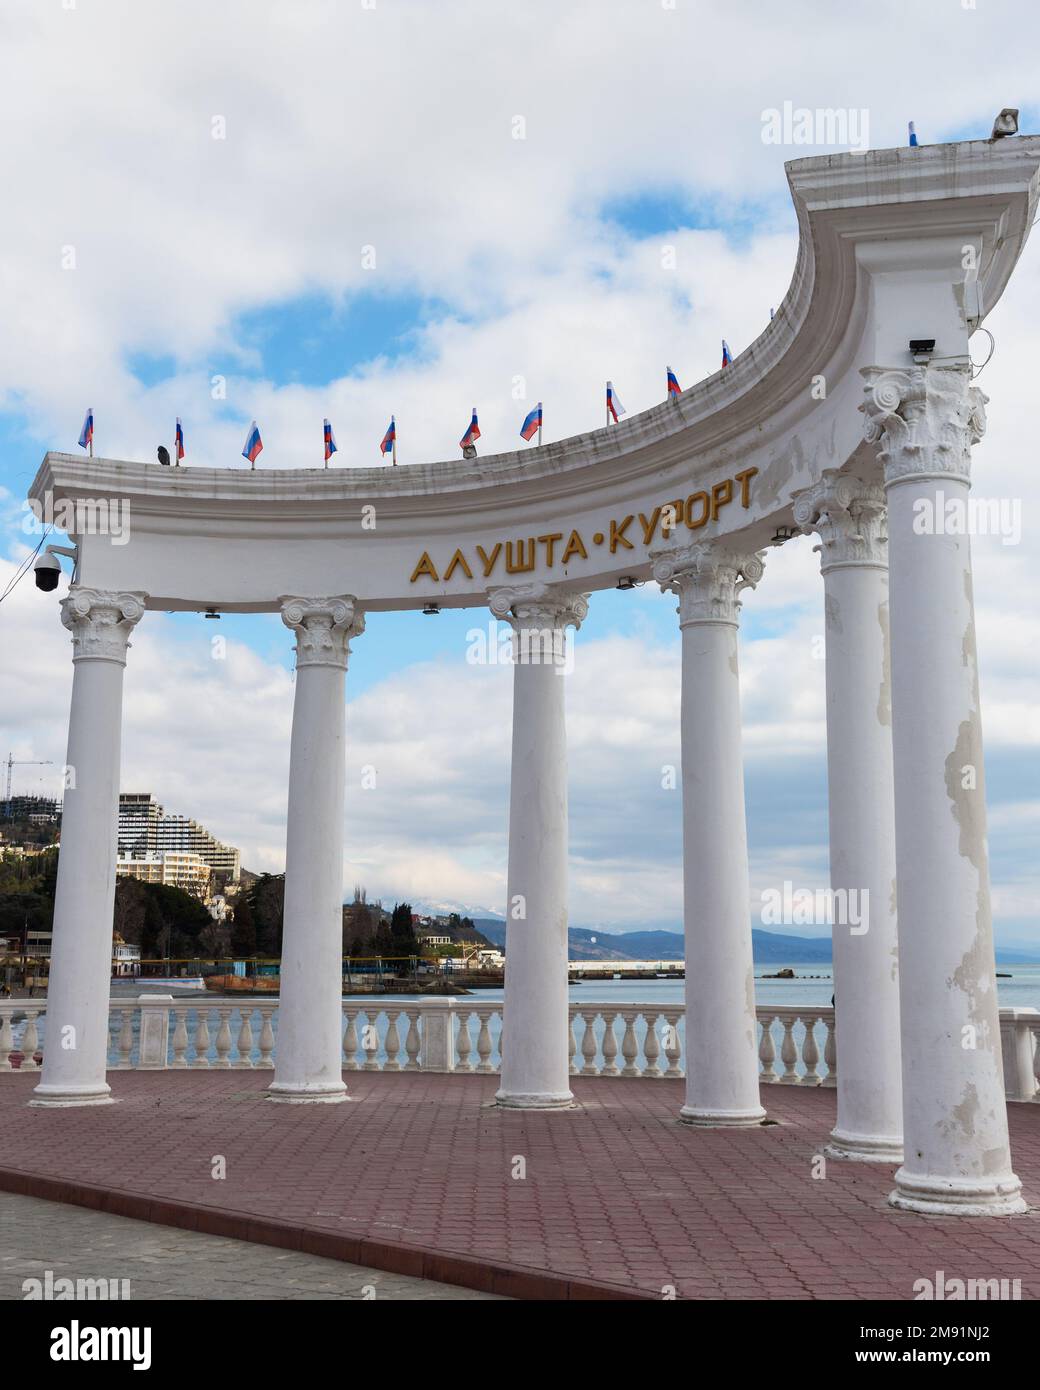 Alushta, Crimea - March 25, 2021: White columns on the promenade in spring Stock Photo